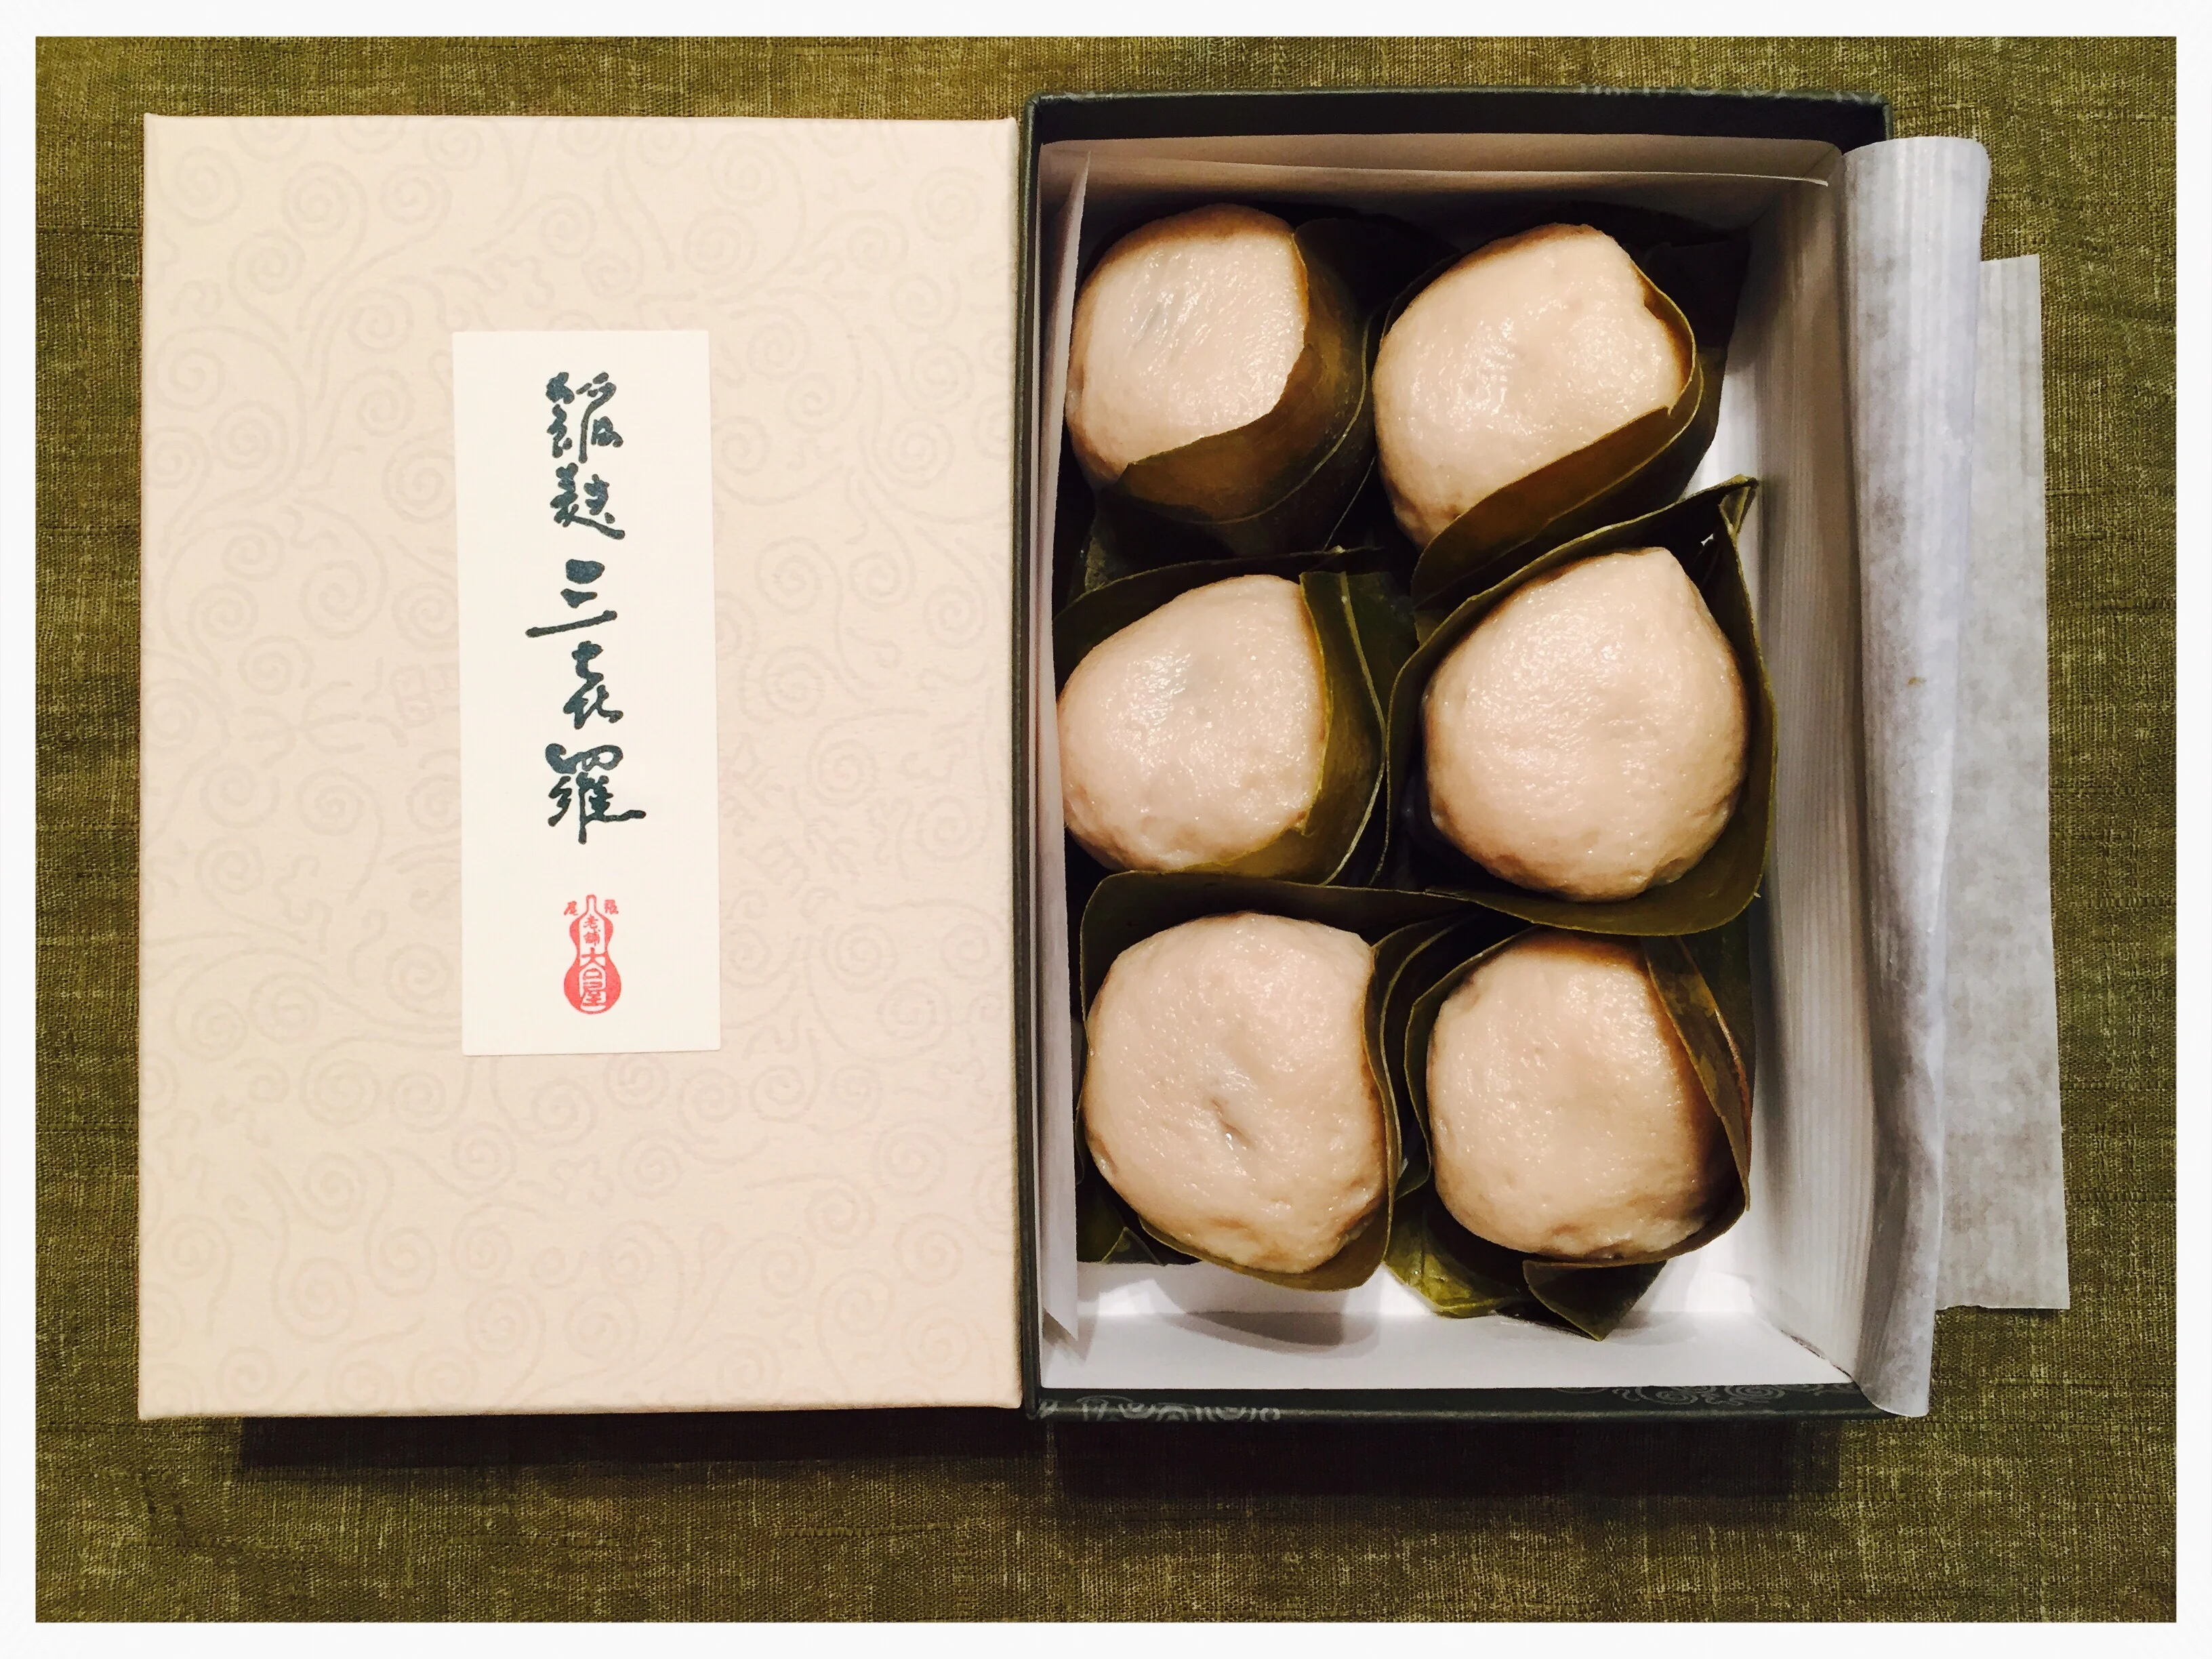 イチオシの名古屋土産・フワフワ生麩饅頭と大好きな名古屋メシ♪